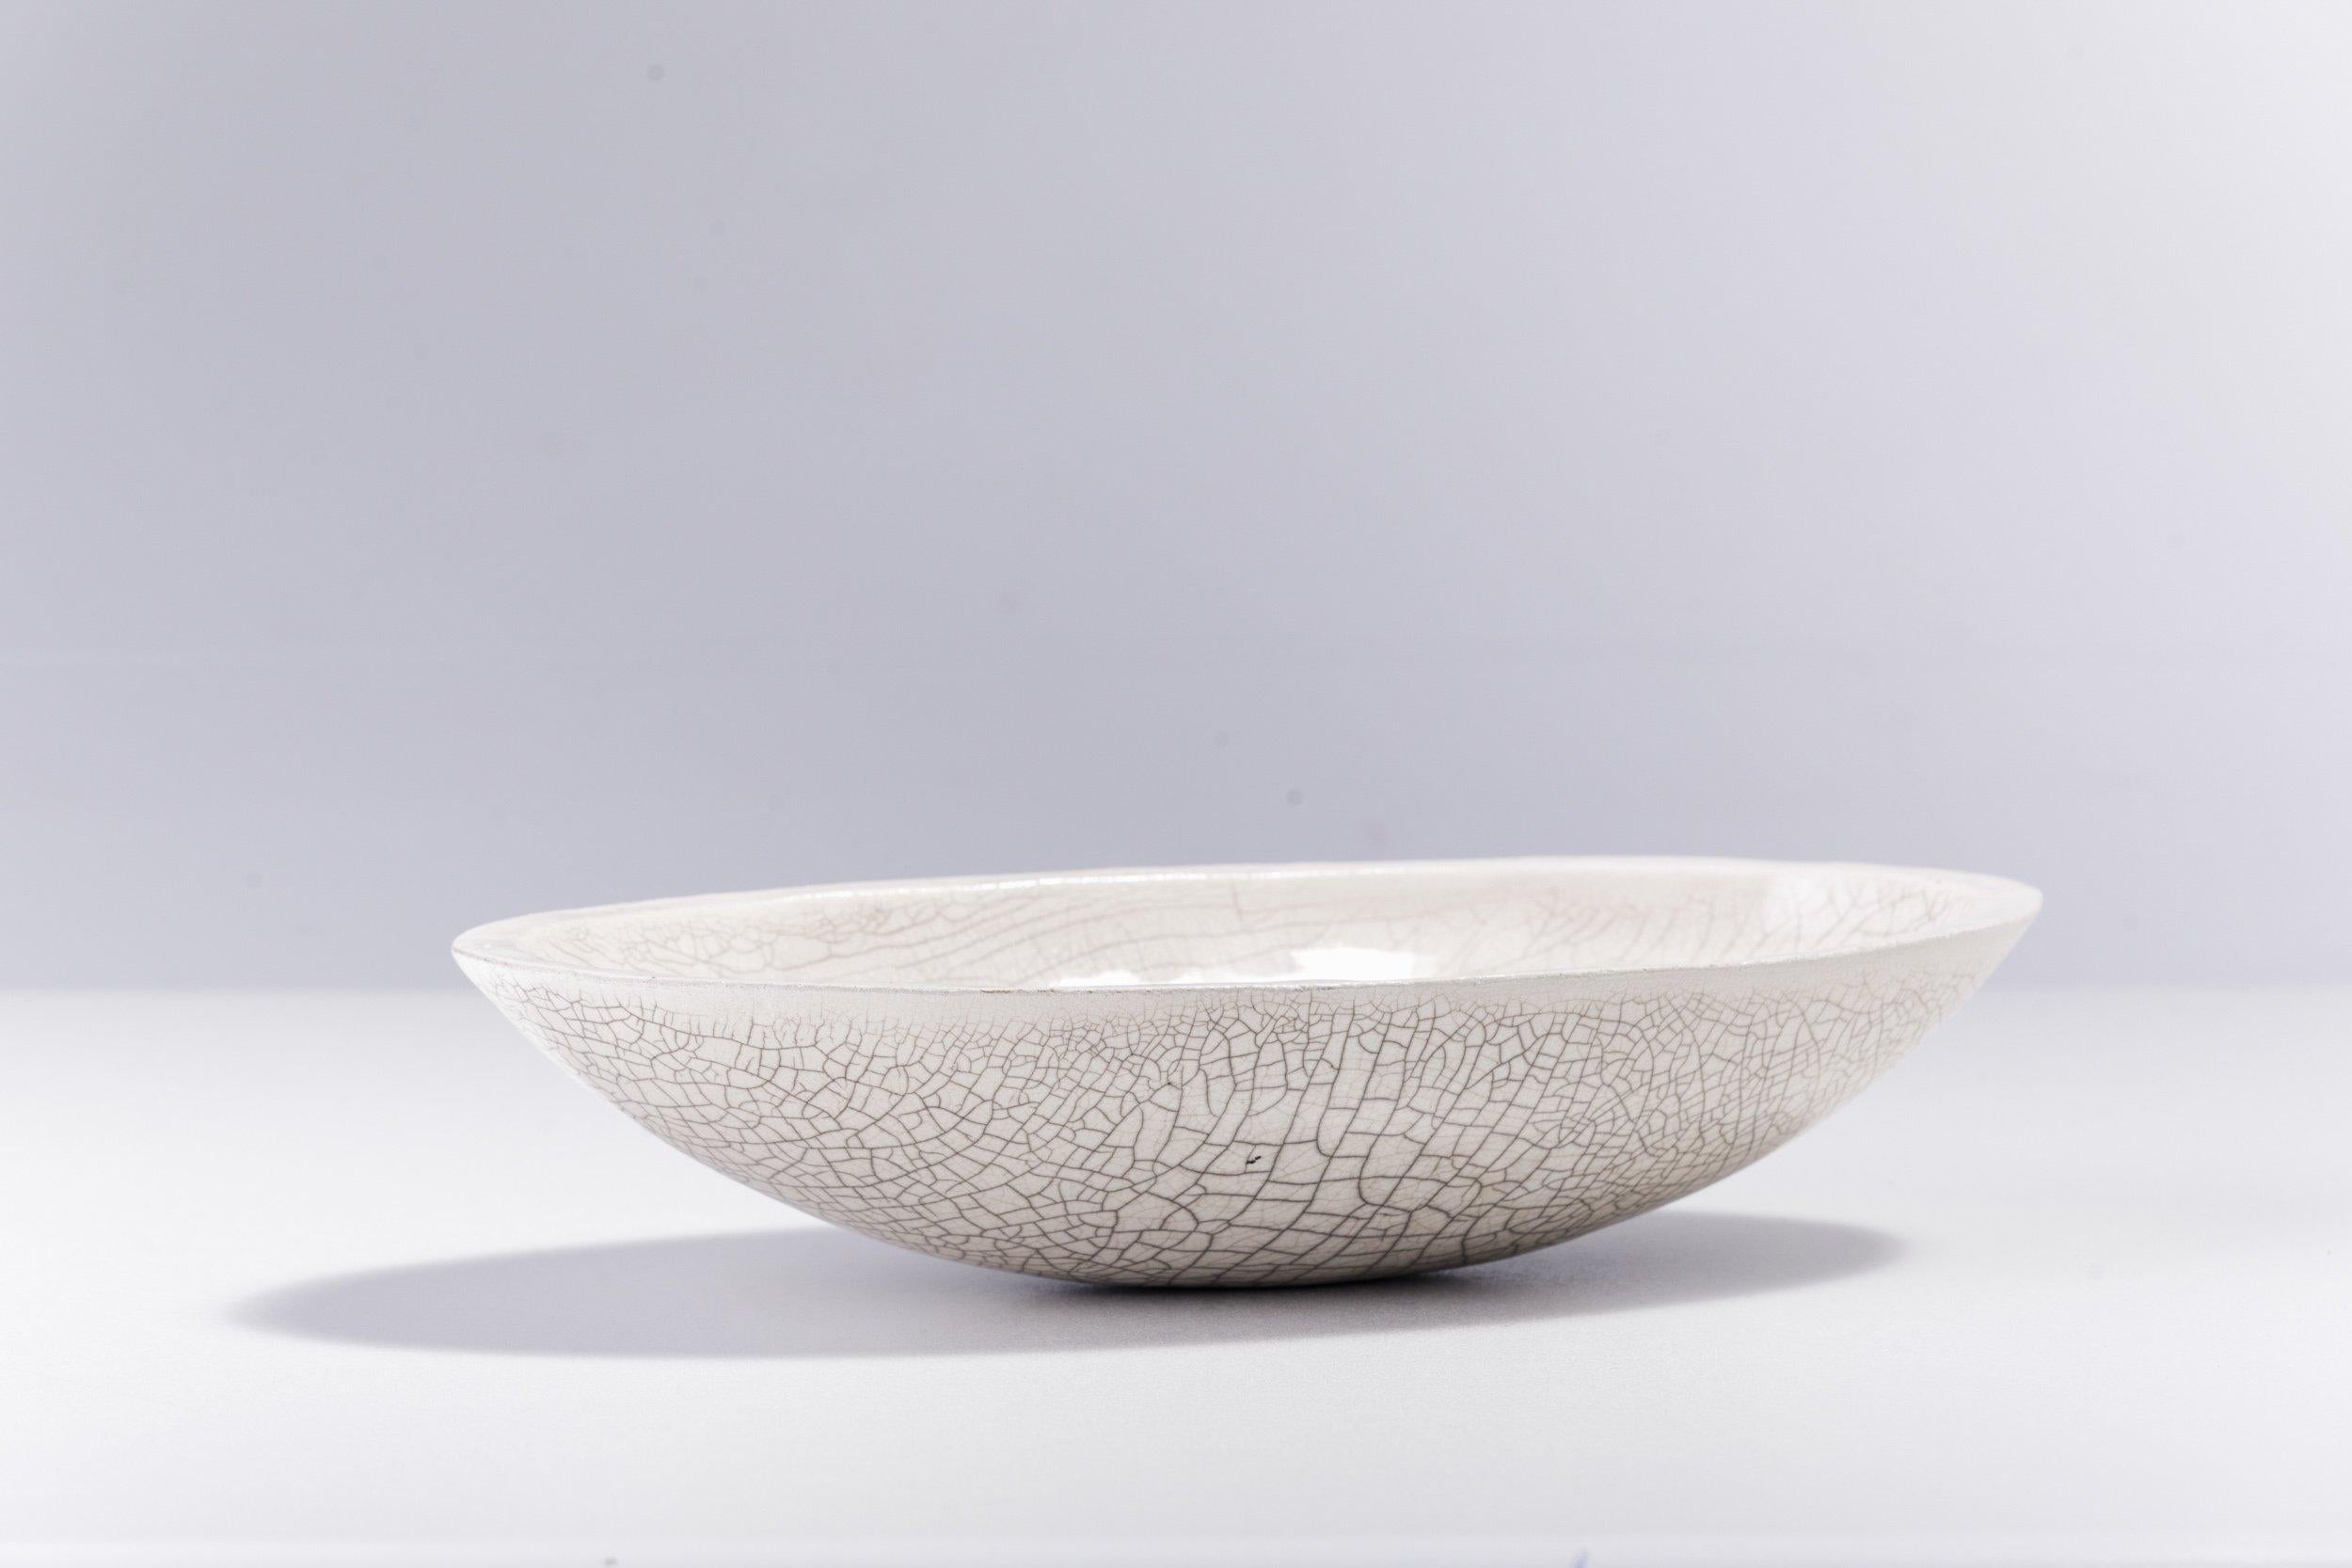 Donburi L bol

Exsudant un sublime et fort impact visuel dans son design singulier fabriqué à la main selon la technique de poterie japonaise raku, ce bol ovale est nommé d'après le plat coréen internationalement connu et apprécié. Pièce d'accent